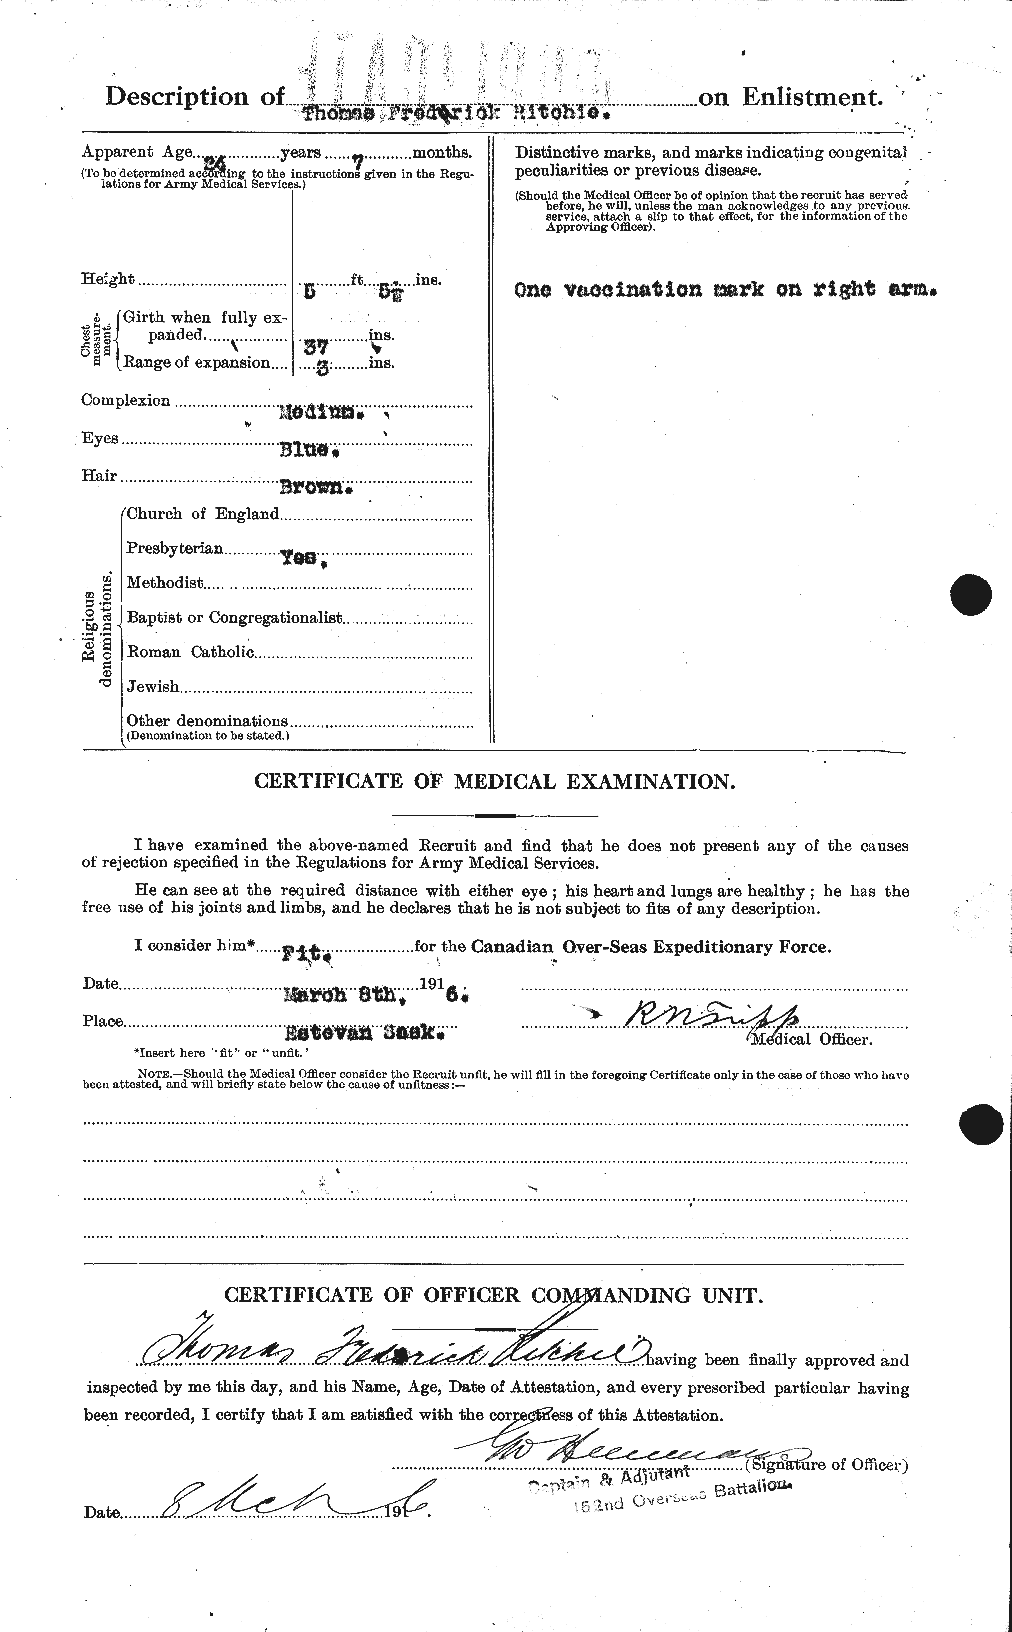 Dossiers du Personnel de la Première Guerre mondiale - CEC 605503b